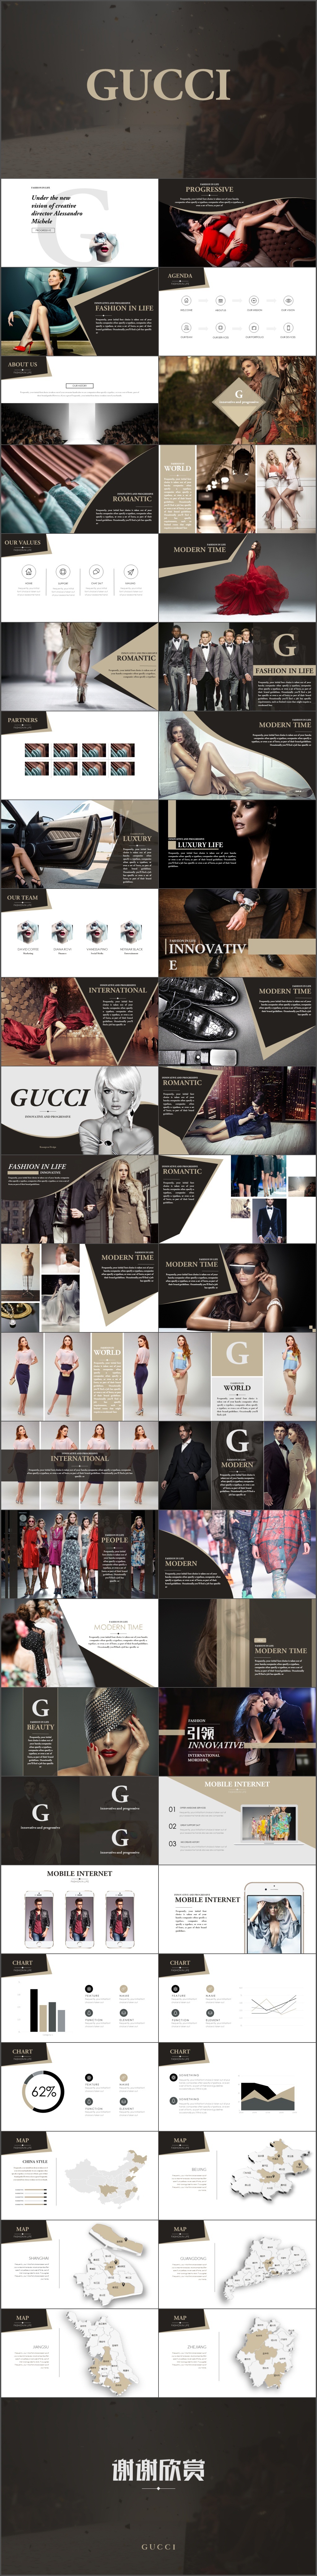 奢侈品牌高端时尚时装服装展示广告宣传PPT模板(443)